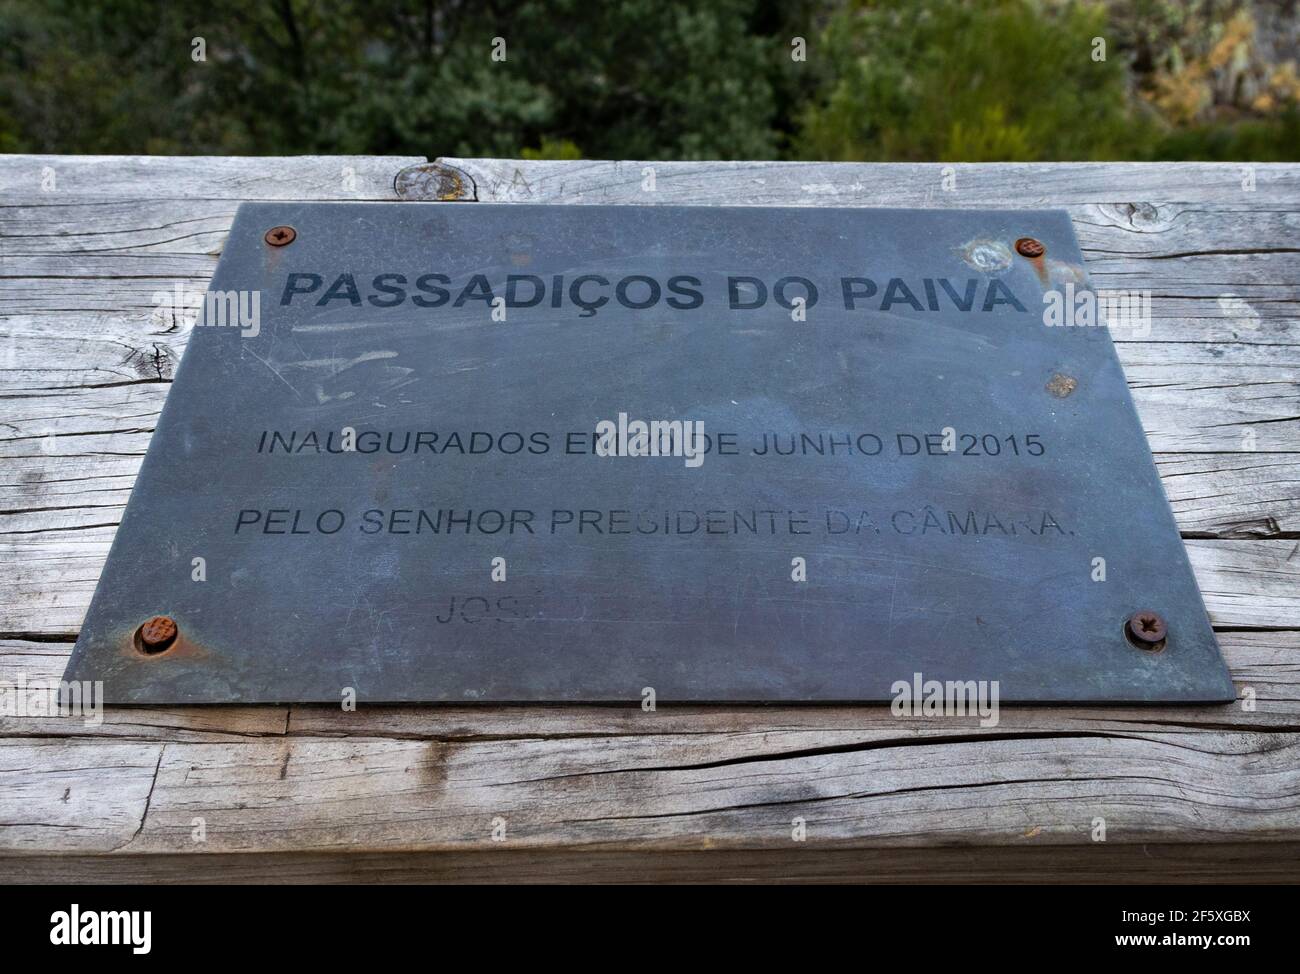 Placa Passadiços do Paiva, Arouca, Portugal. Stock Photo